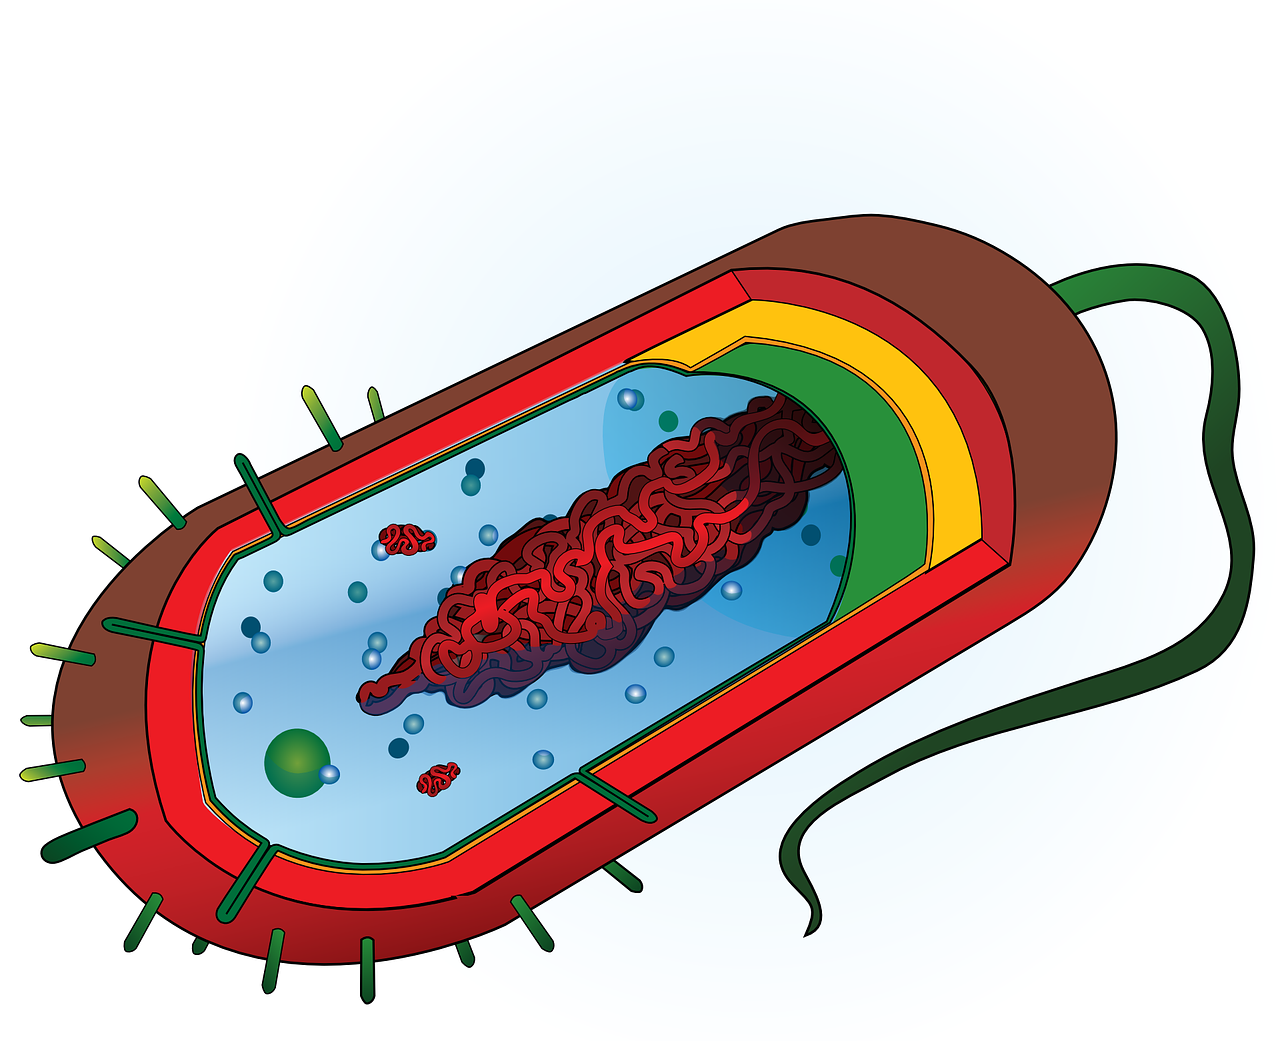 Bakterija, Nukleozė, Citoplazma, Ląstelė, Ribosomos, Membrana, Siena, Kapsulė, Biologija, Flagelas